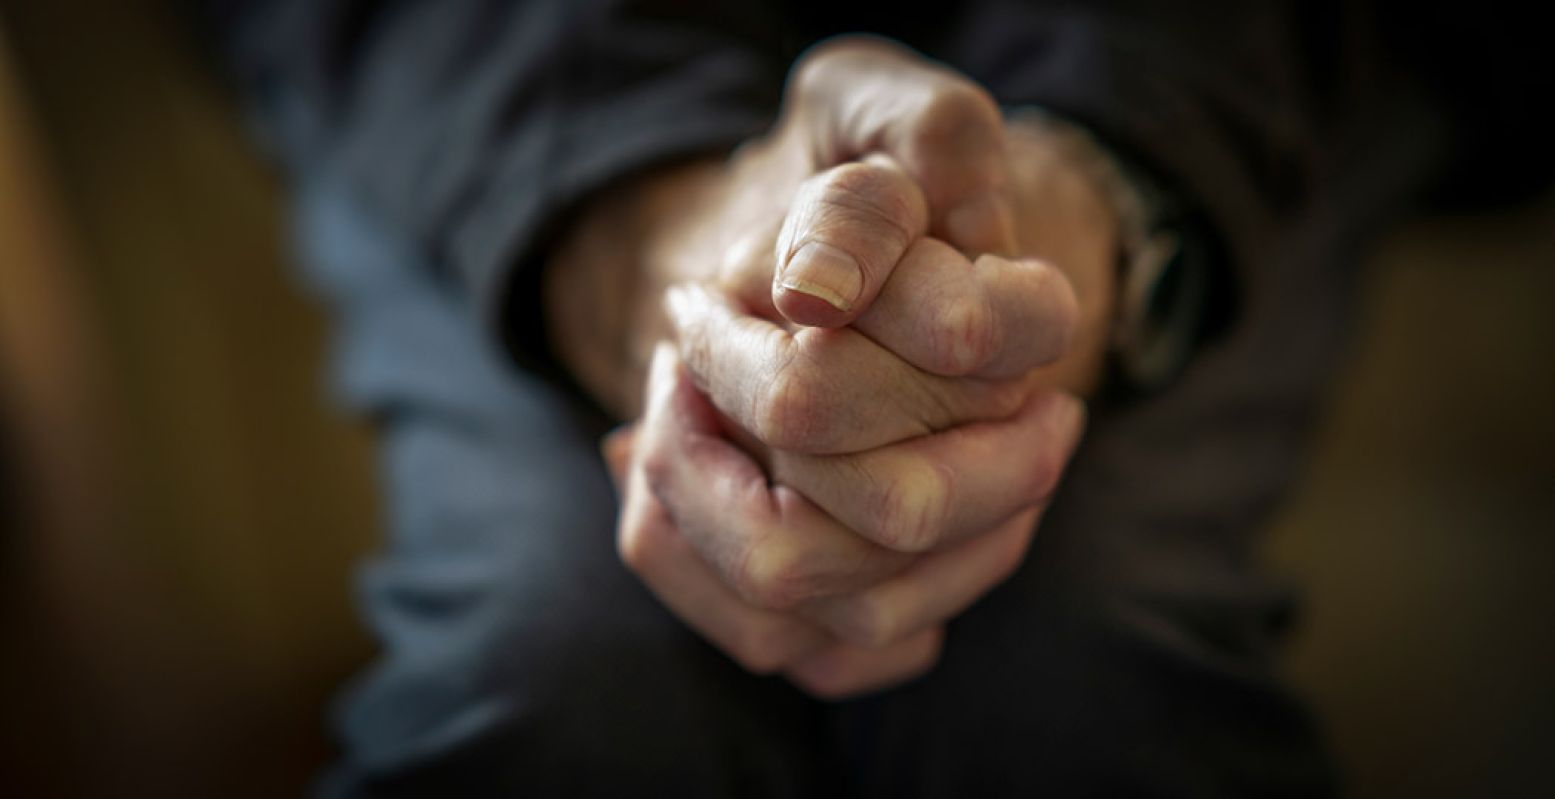 De handen van Jos, een ex-COVID patiënt en client in GGZ Breburg. Foto: Museum van de Geest © Inge Hondebrink